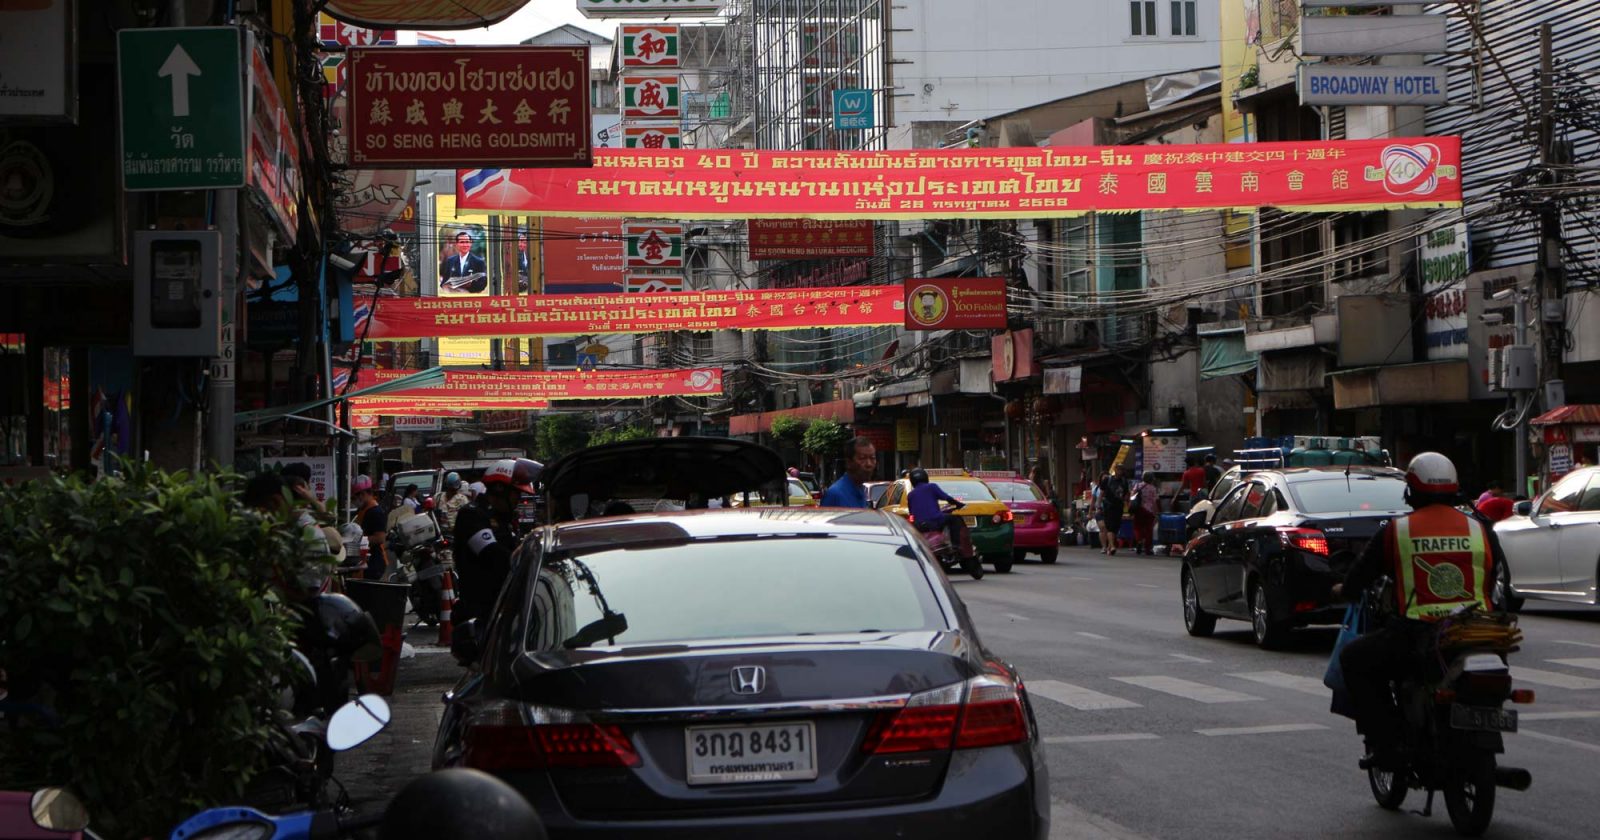 6 самых популярных достопримечательностей Бангкока за один день